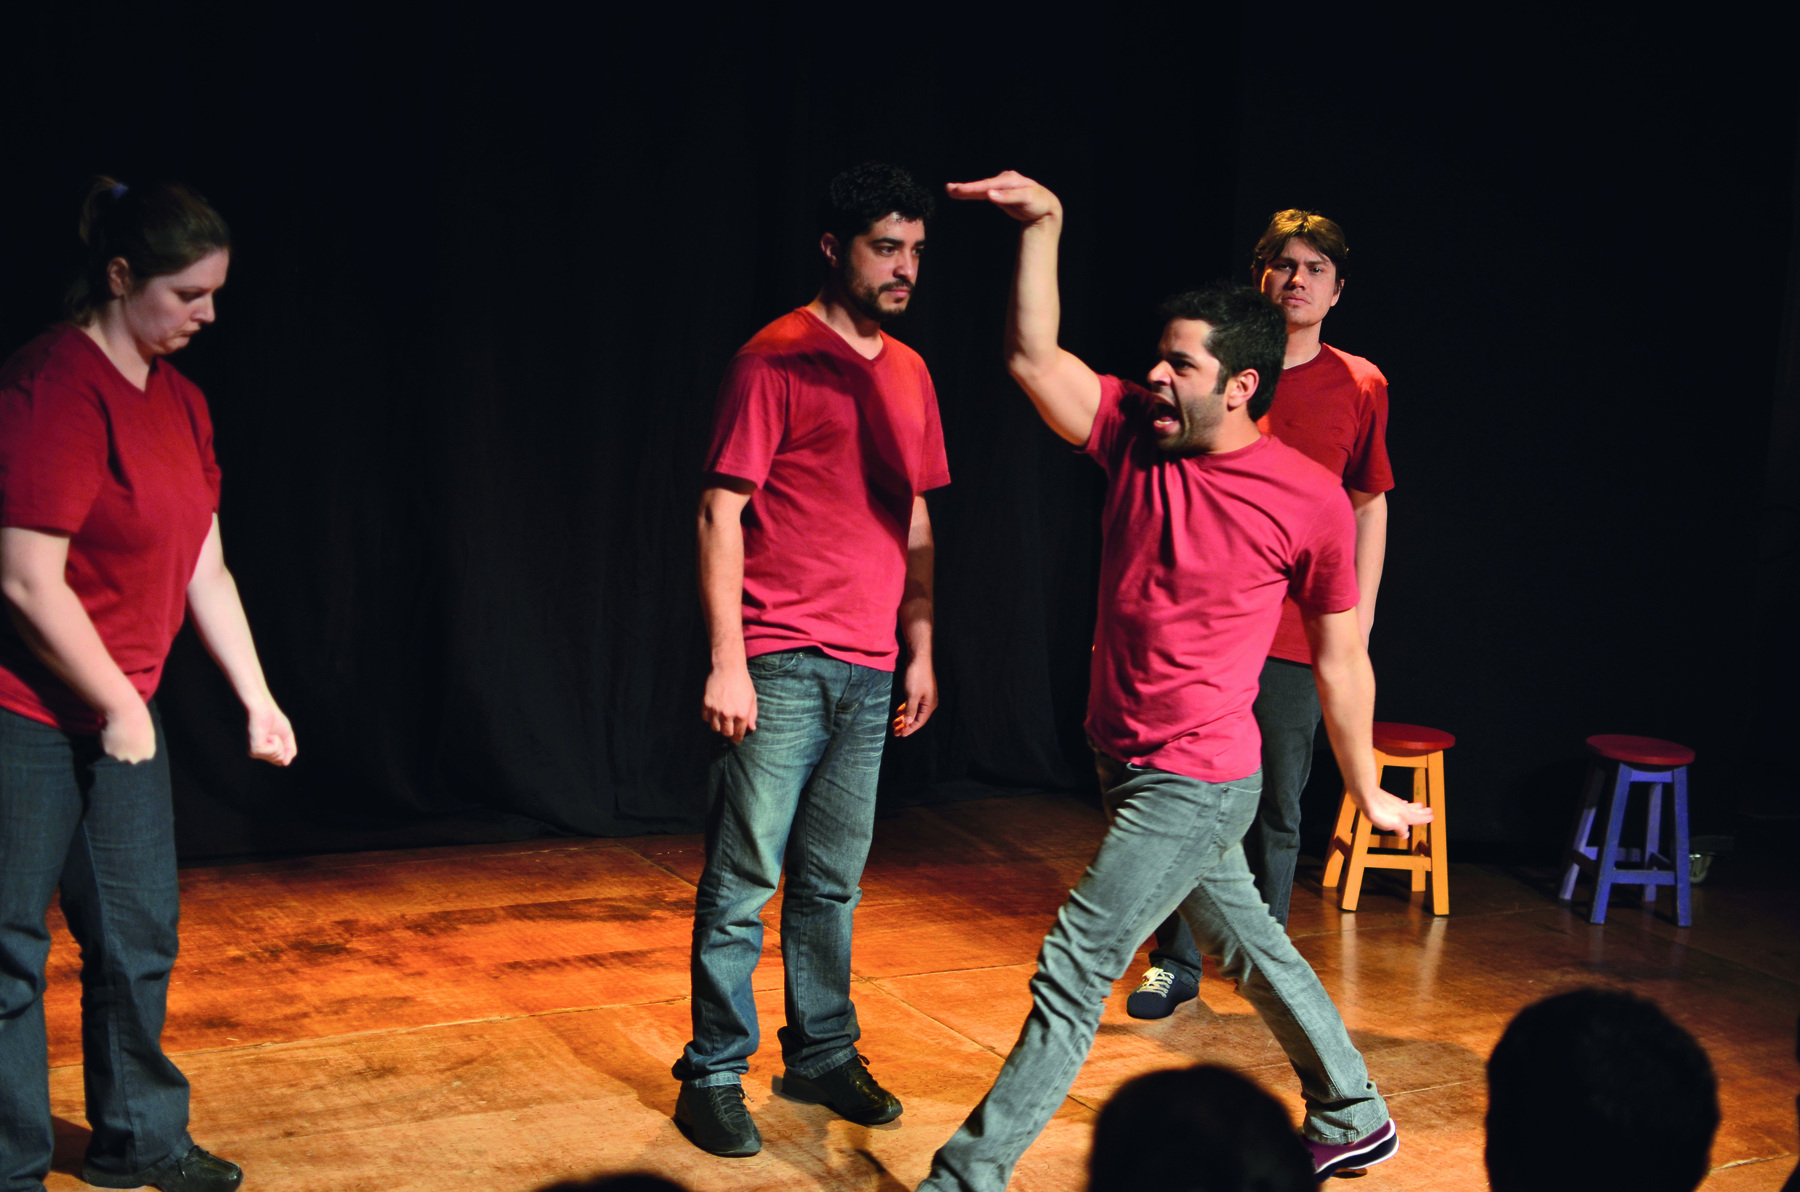 Fotografia. Quatro atores encenam em um pequeno palco. Eles vestem camisetas vermelhas e calças jeans. À esquerda, uma atriz e, à direita, três atores. Um deles, em primeiro plano, está andando e movendo os braços.